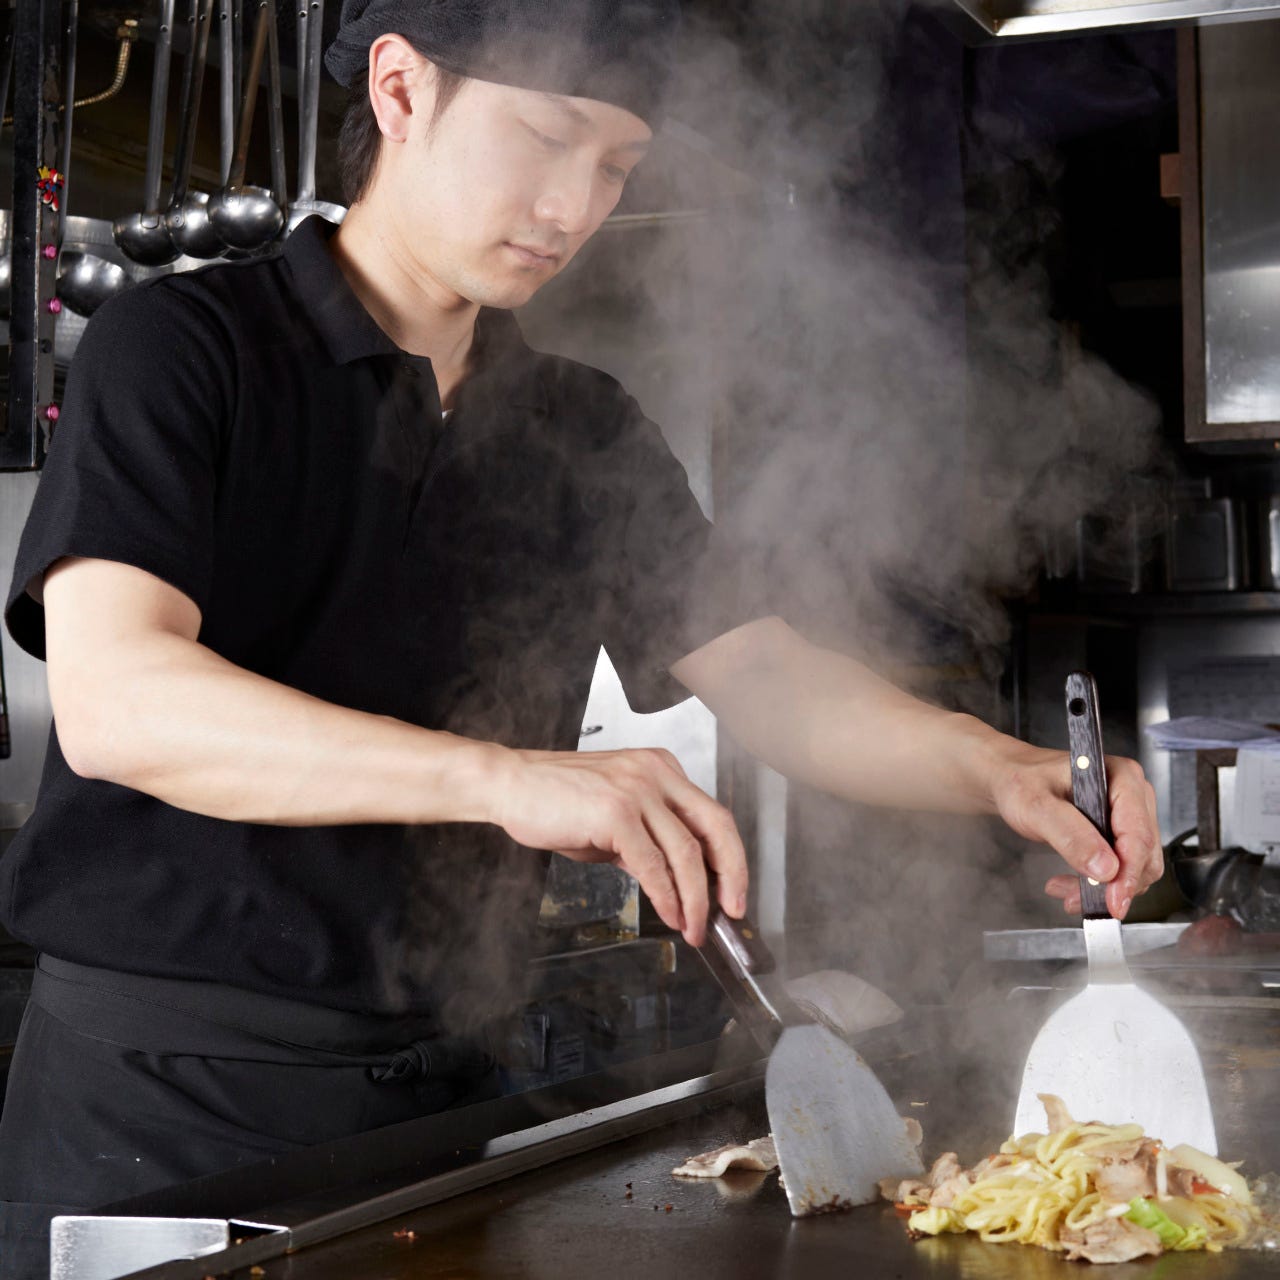 Okonomiyaki is baked by craftsmen